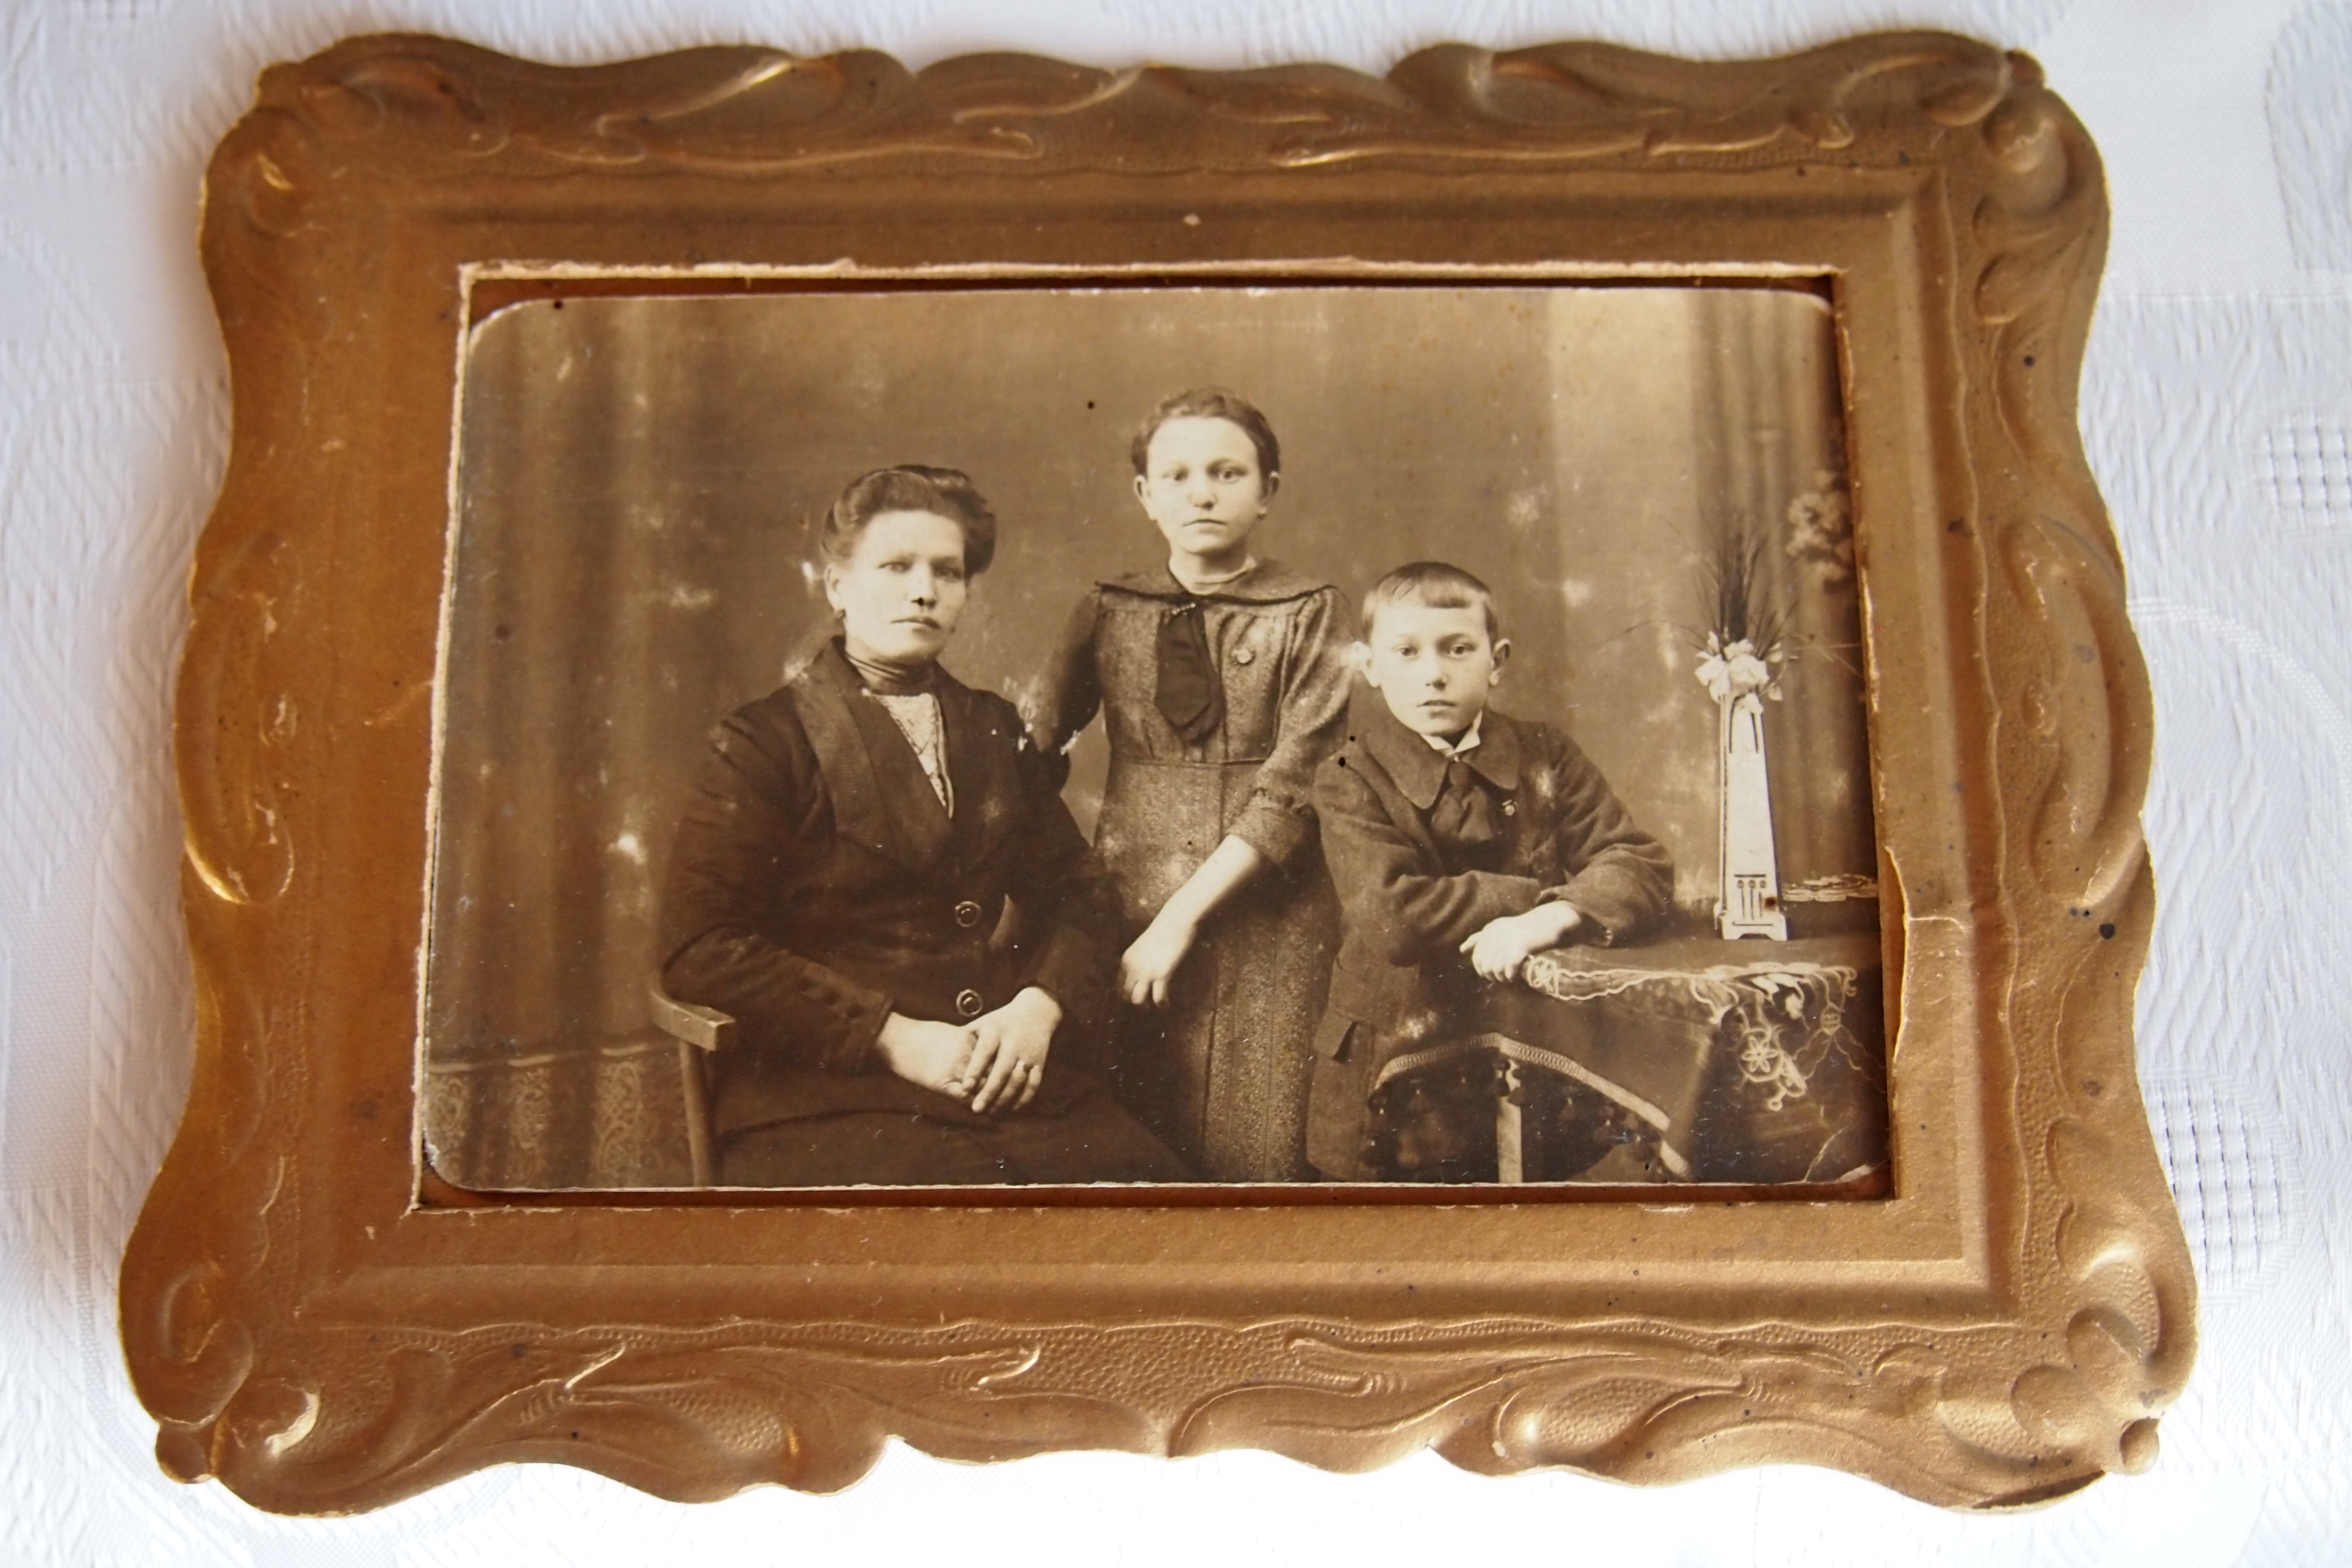 Rodina-stancova-1868-zastavka-morava